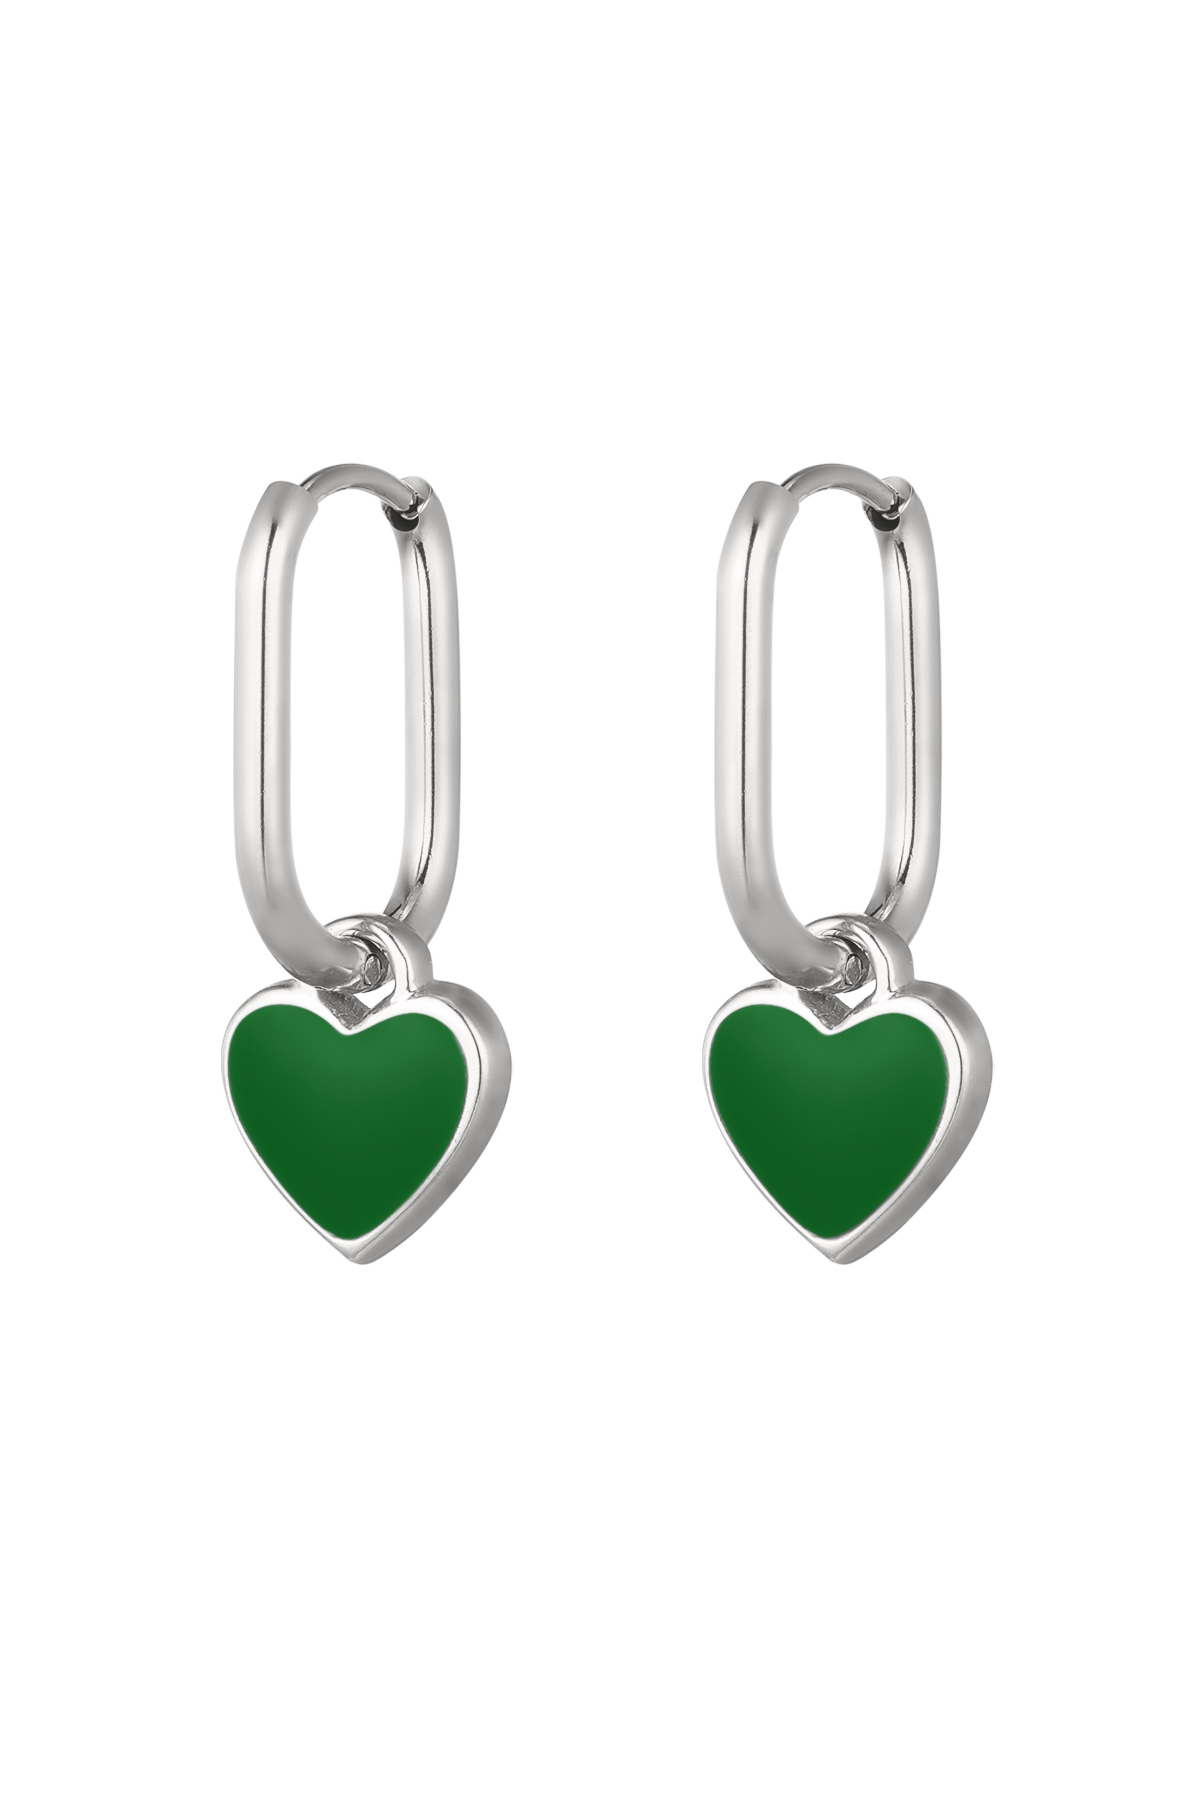 Orecchini cuore colorato Verde/argento Acciaio inossidabile 